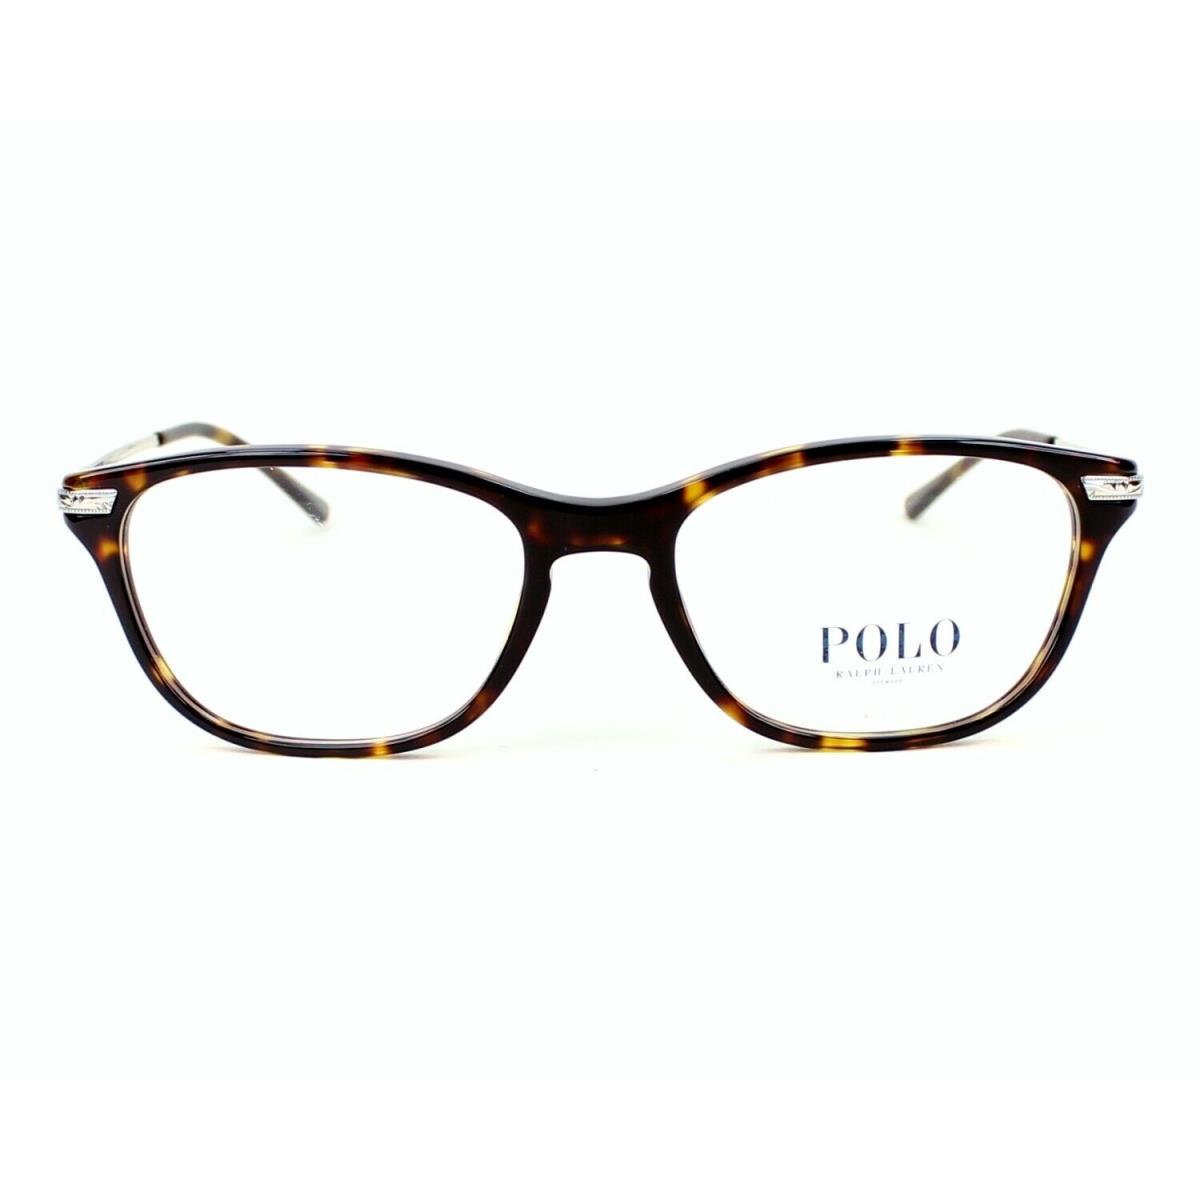 Polo Ralph Lauren PH2135 5003 Tortoise Eyeglasses RX 53-17-140 MM